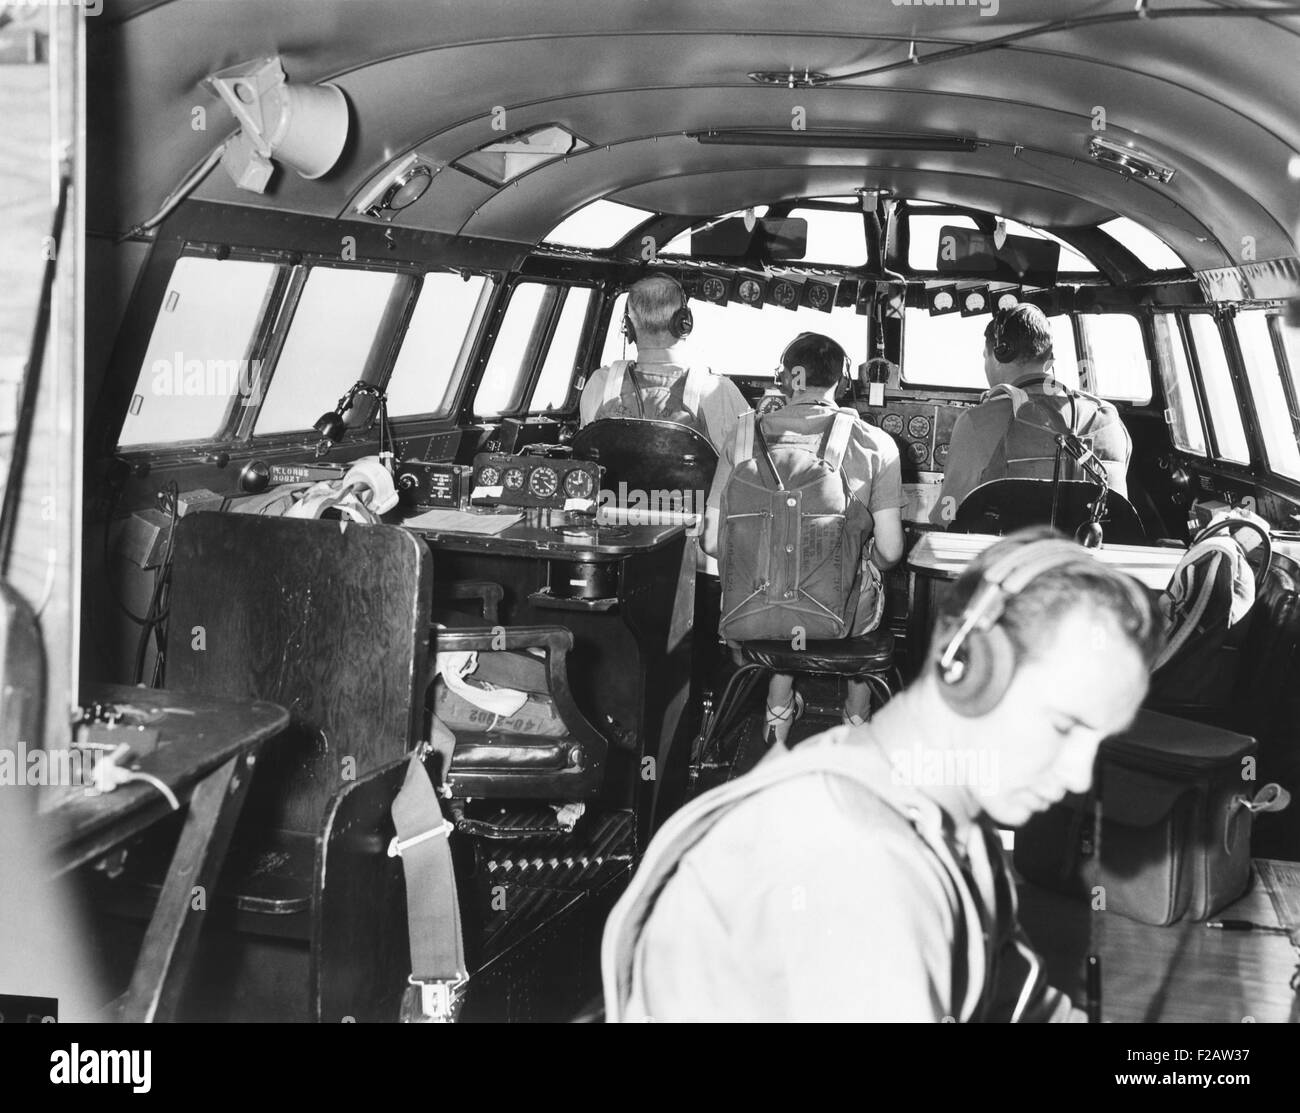 La cubierta puente o cabina del 82-tonelada Douglas B-19, el bombardero más grande del mundo. 13 de noviembre de 1941. Con la espalda a la cámara son el piloto, el ingeniero de vuelo, y el co-piloto. El radioman es en la parte inferior derecha. Las dos sillas vacías son para el navegante y el comandante. El avión nunca entró en producción y fue reemplazado por la B-29. (CSU 2015 11 1455) Foto de stock